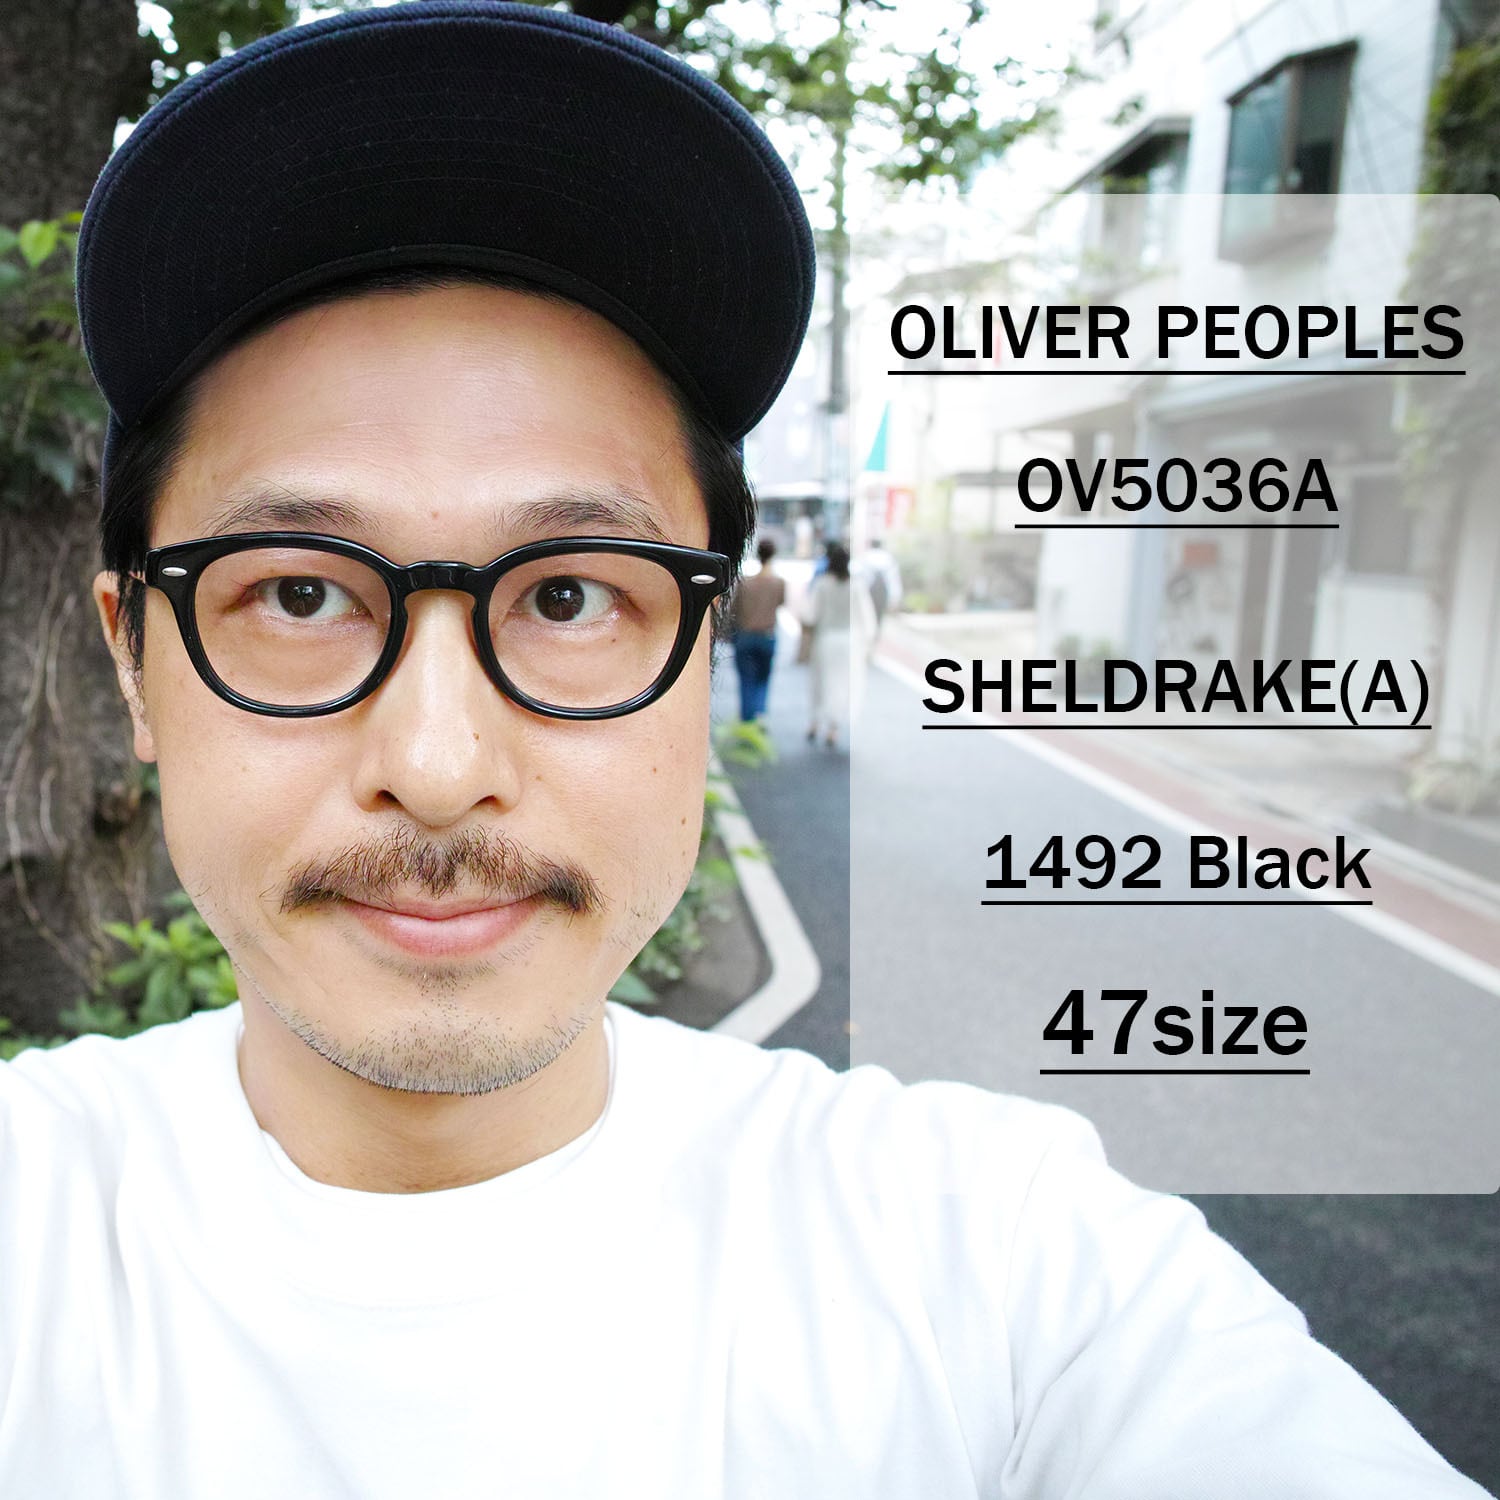 どうぞよろしくお願いいたします【OLIVER PEOPLES】OV5036A Sheldrake イタリア製